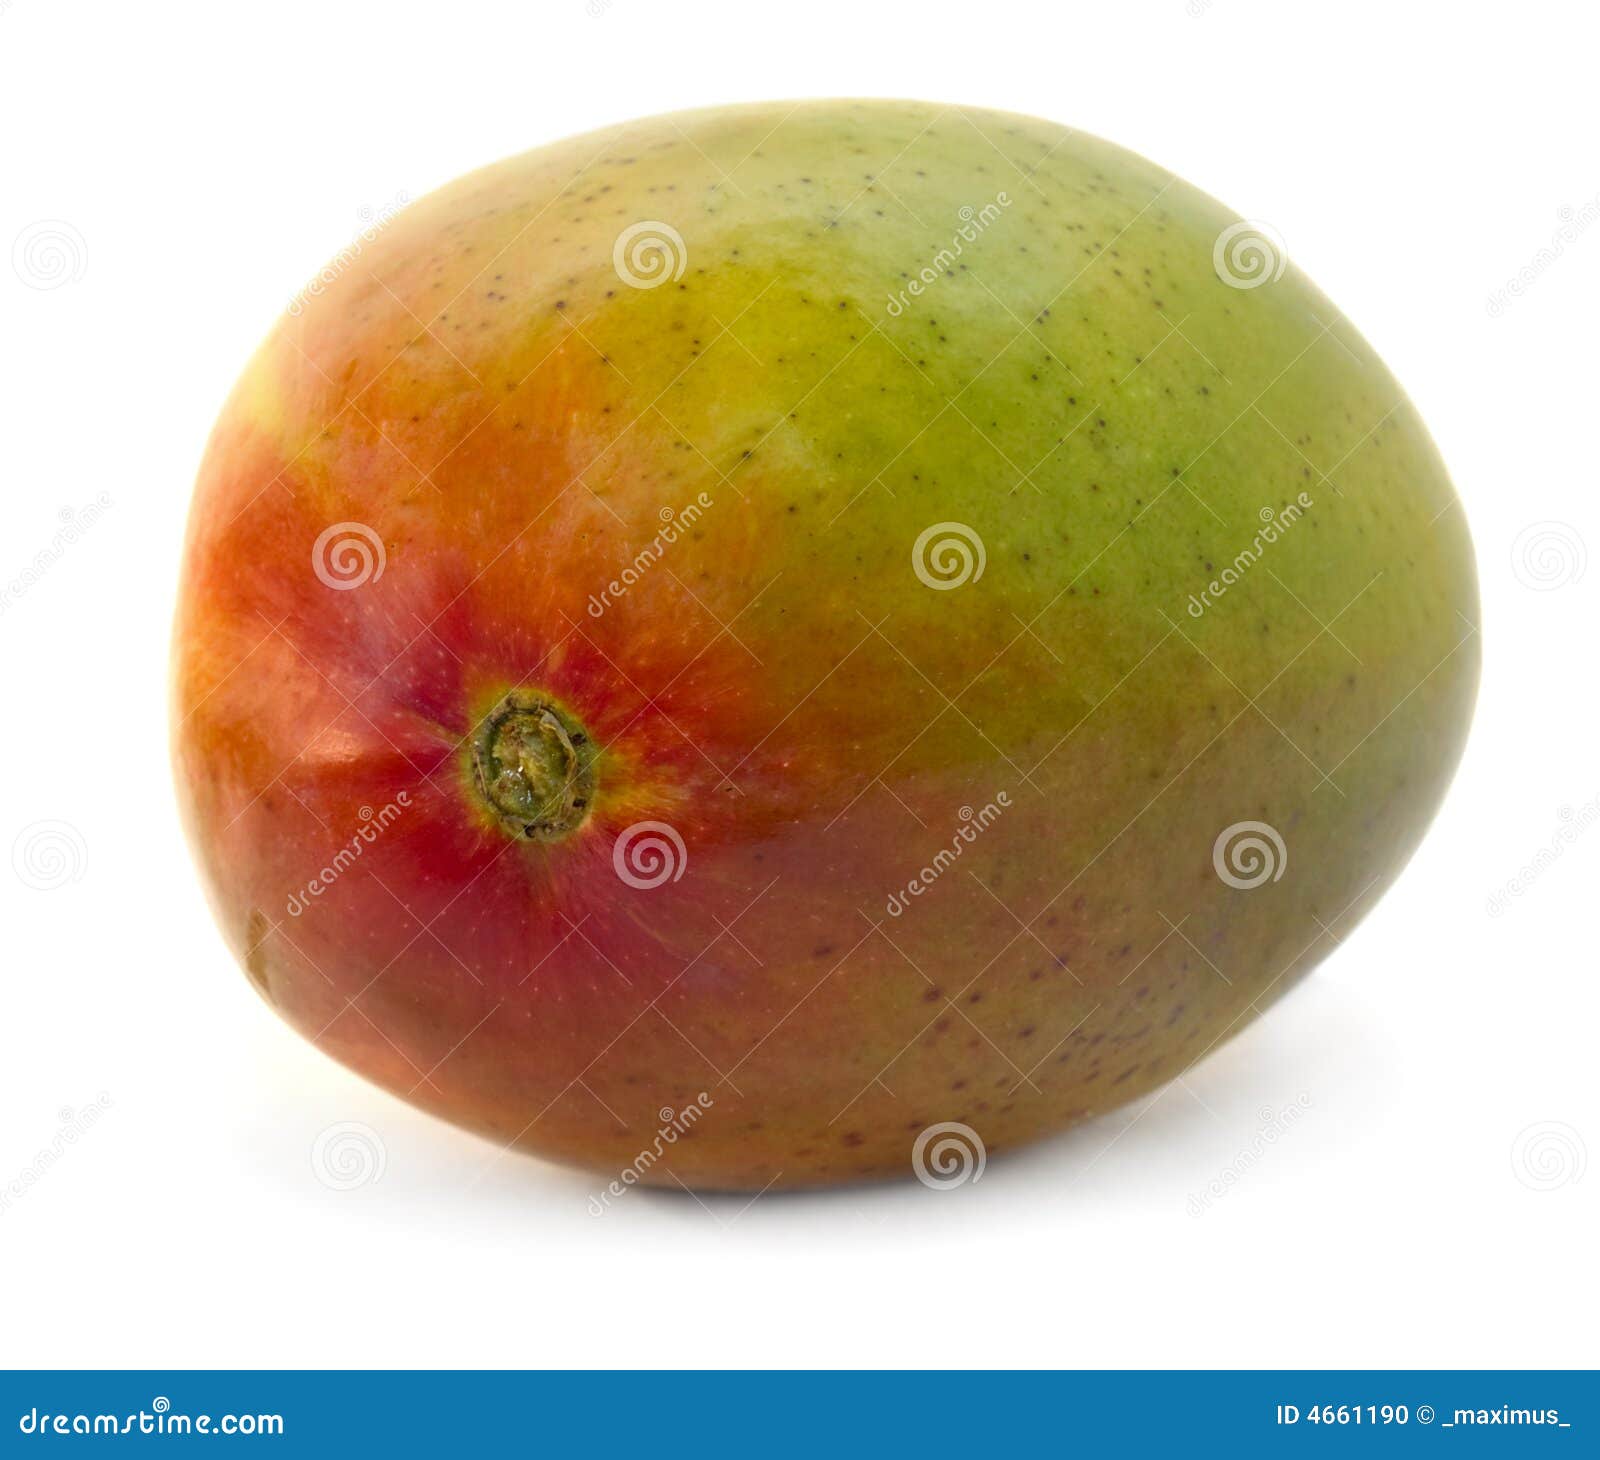 Geïsoleerde mango. Close-up van mangofruit dat over wit wordt geïsoleerdm. trillende kleuren